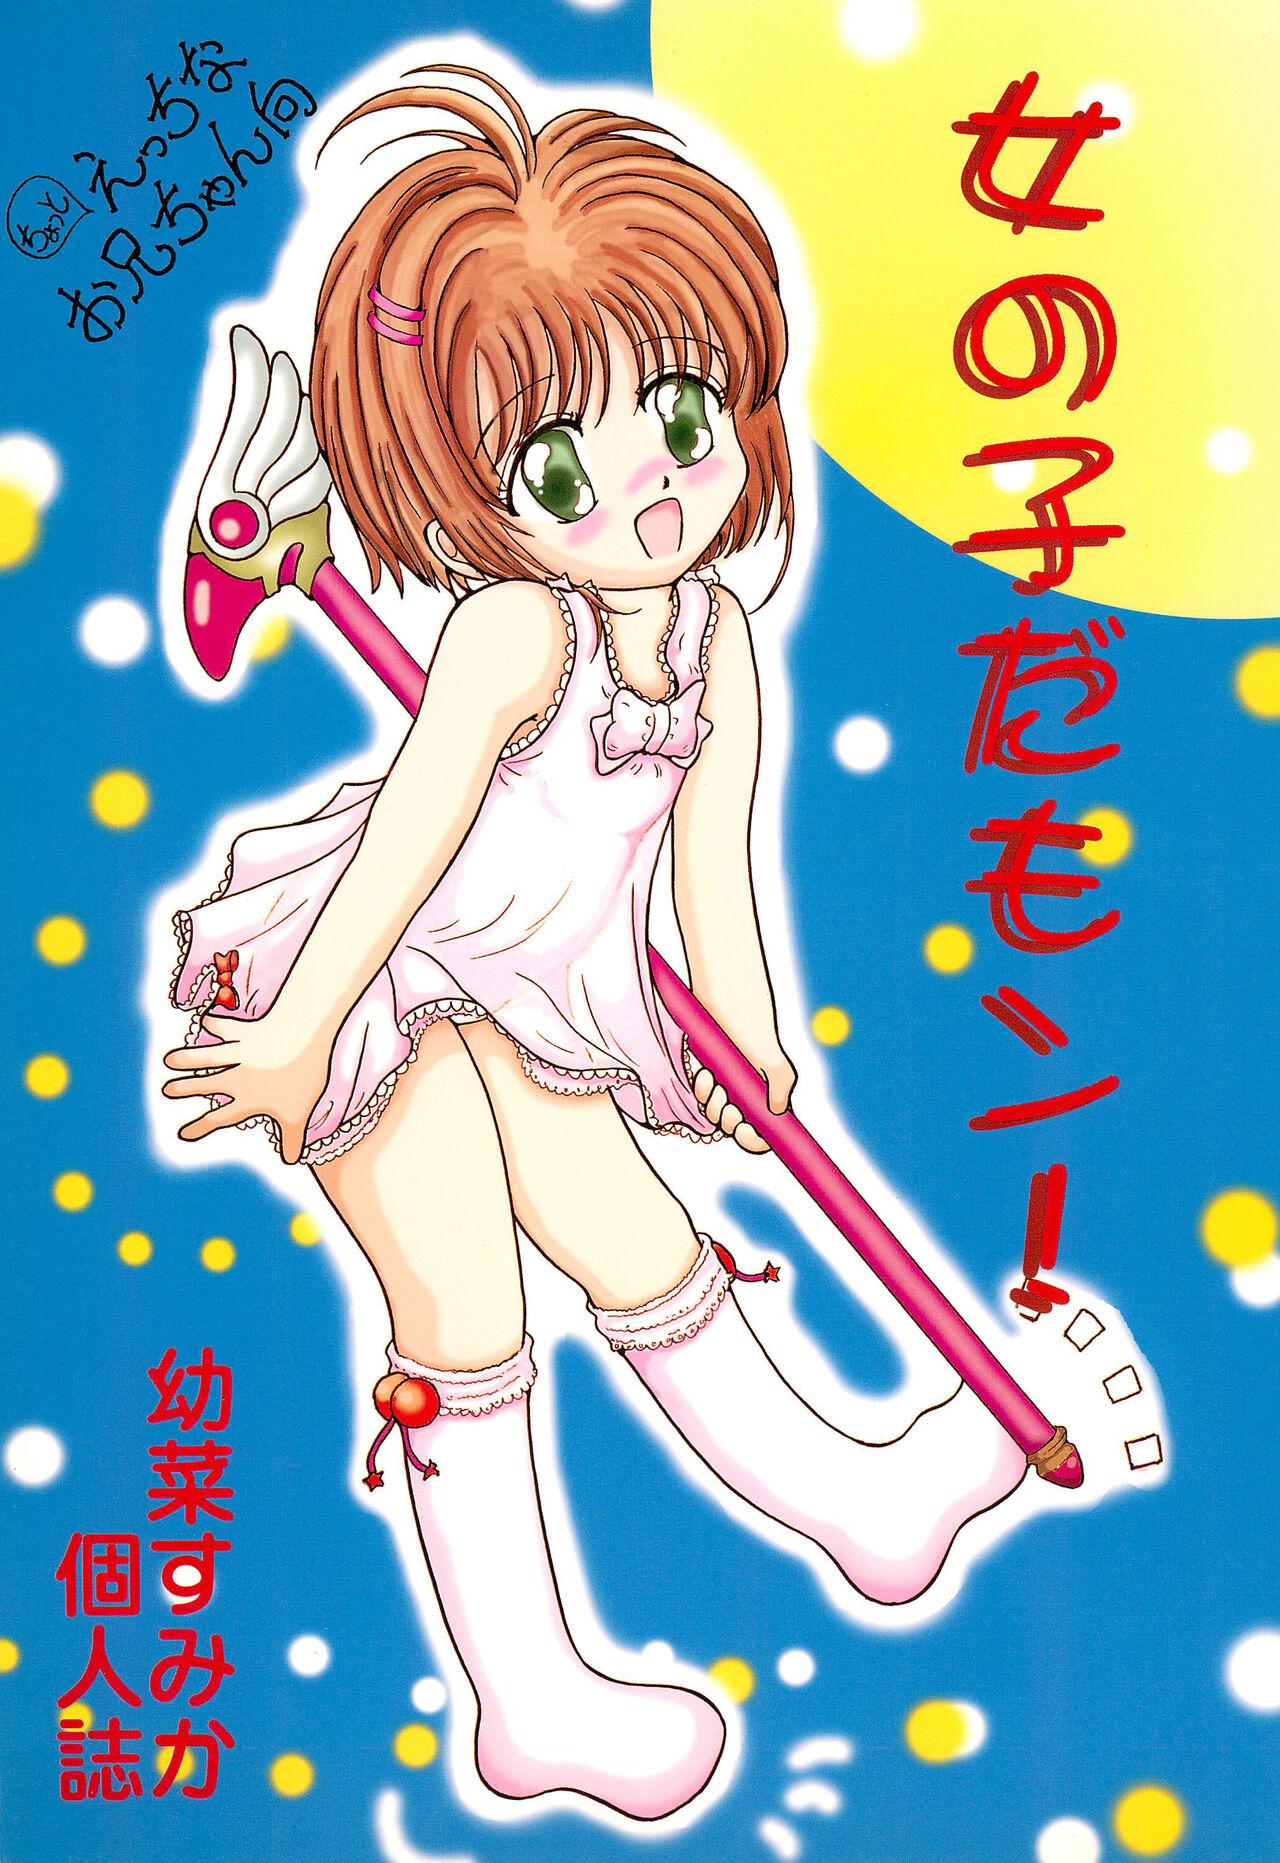 Eating Onna no ko da mon! - Cardcaptor sakura Cam Girl - Page 1